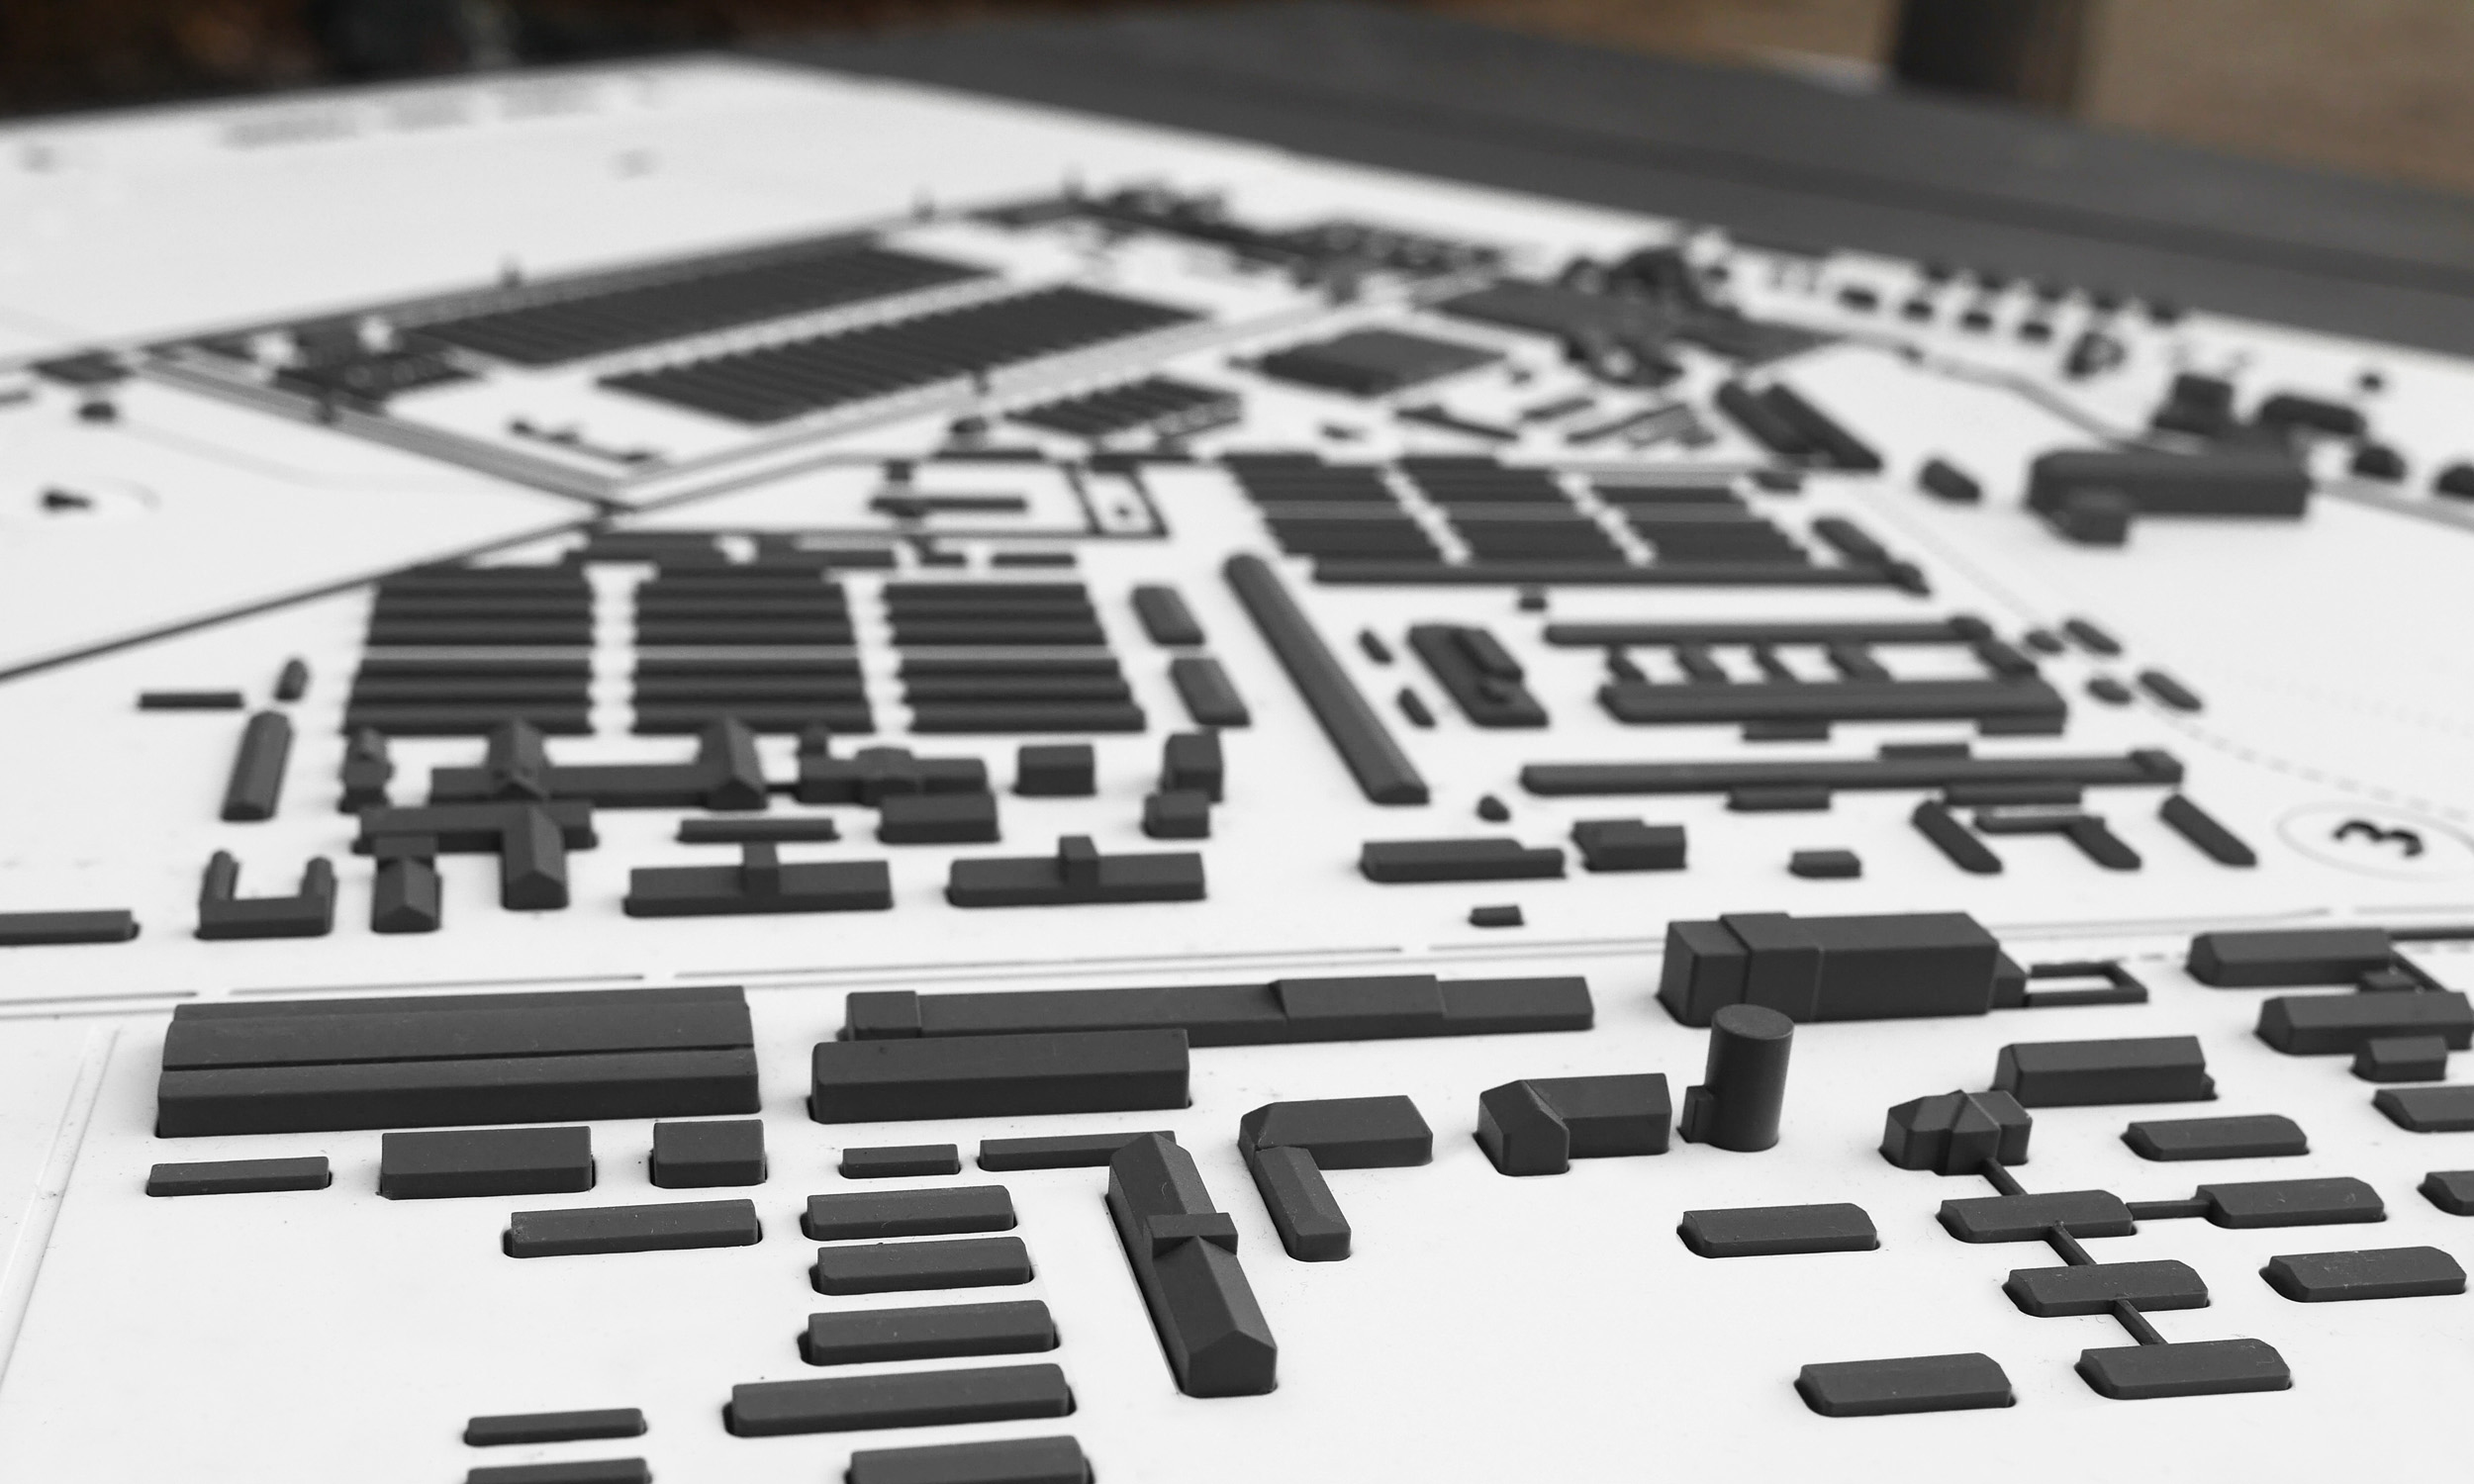 Detailfoto eines Tastmodells mit Darstellung diverser Gebäudekomplexe des ehemaligen KZ